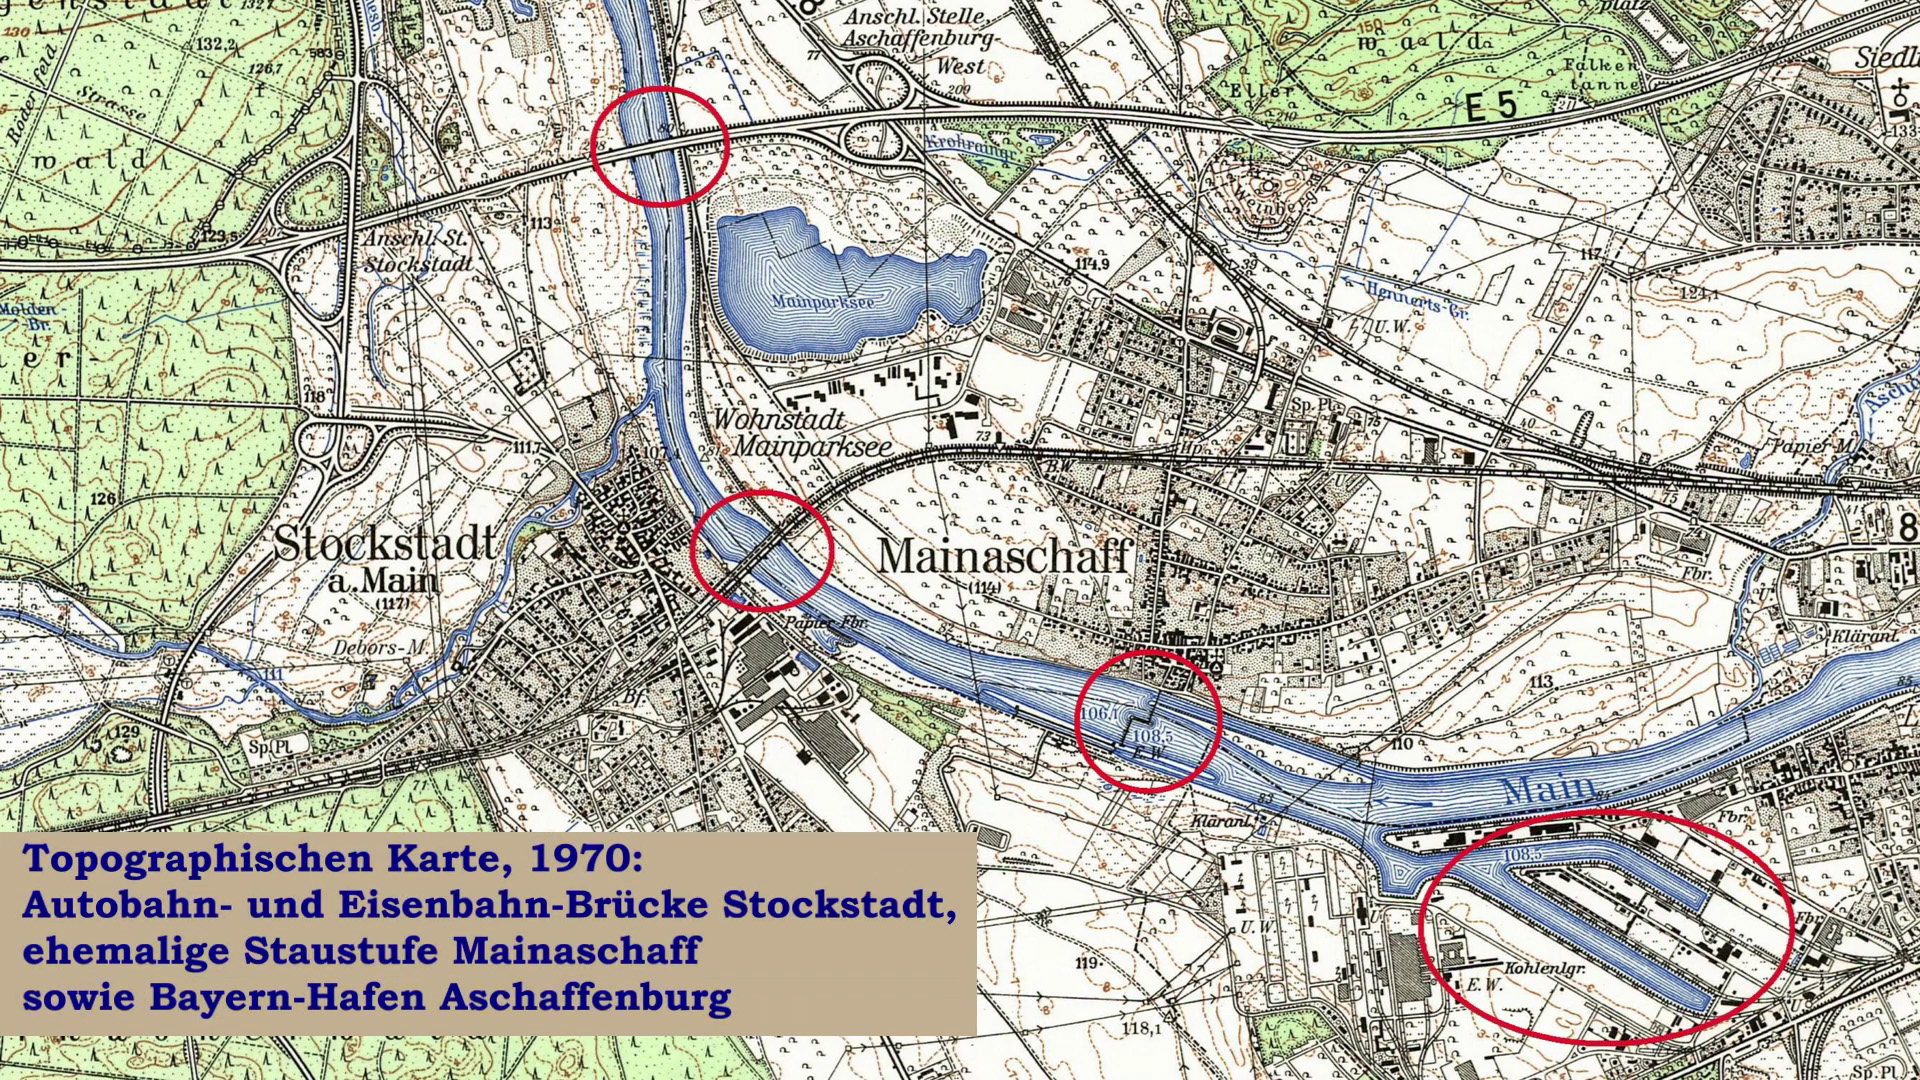 Topographische Karte von 1970 Bayern-Hafen Aschaffenburg, Mainaschaff und Stockstadt